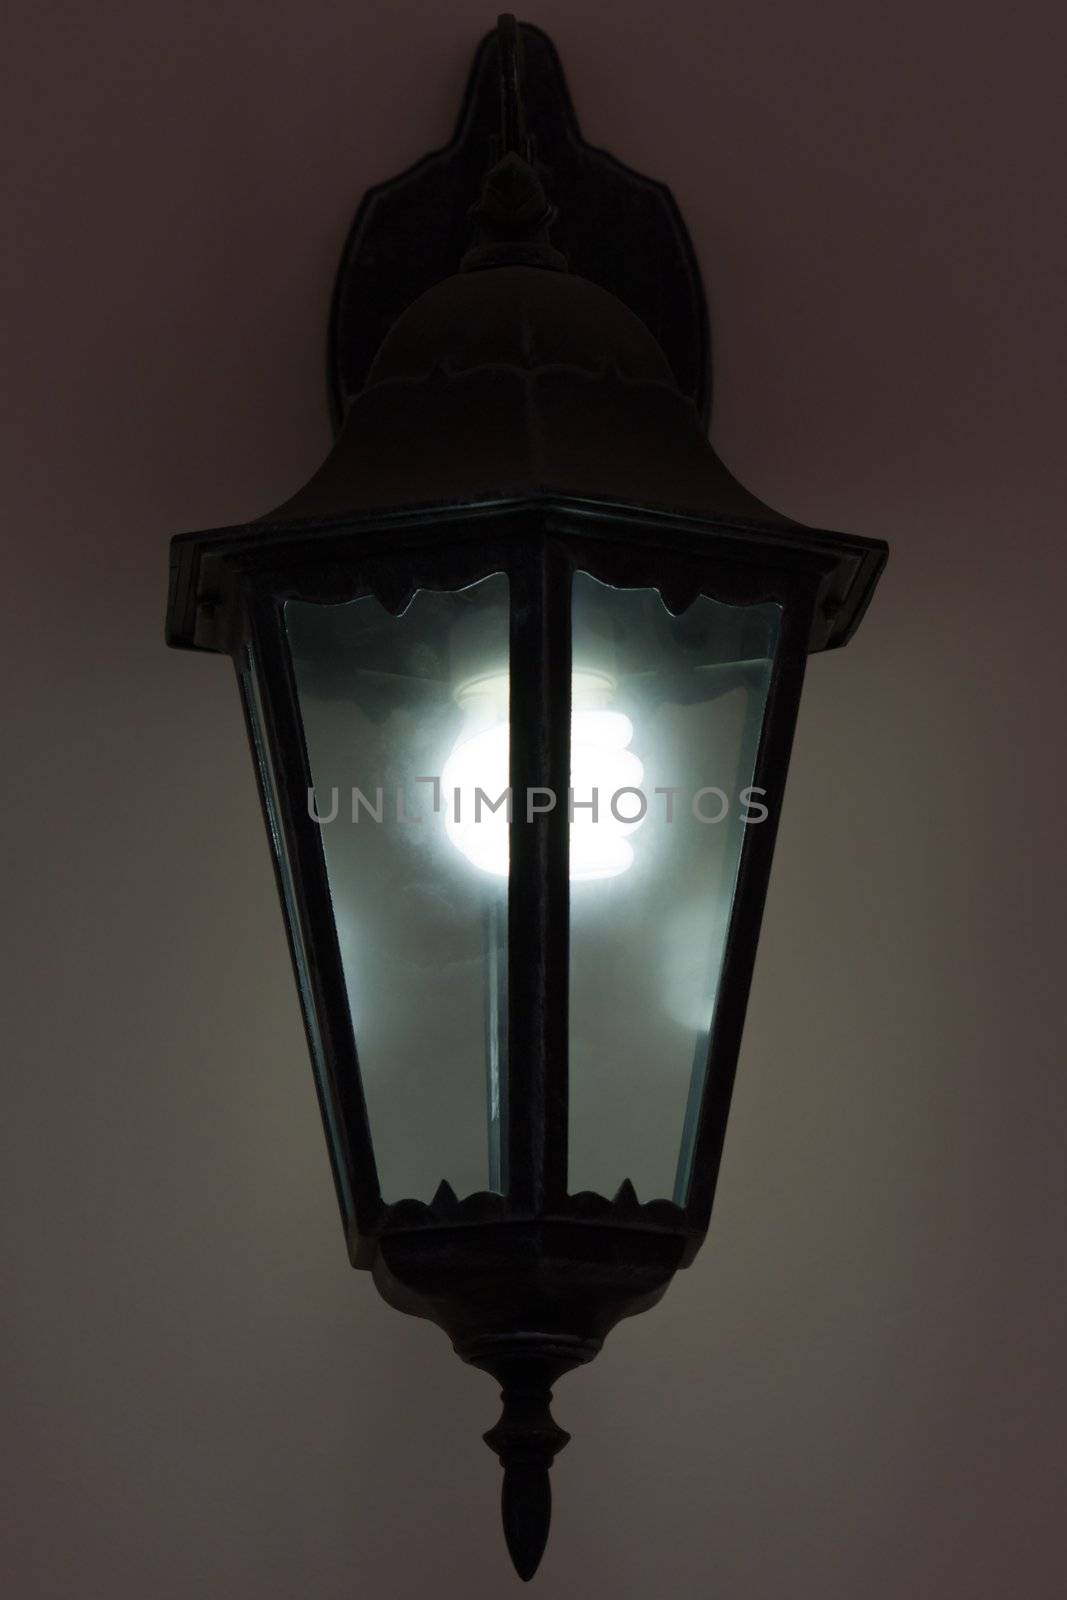 Energy saving bulb in light equipment lantern lamp